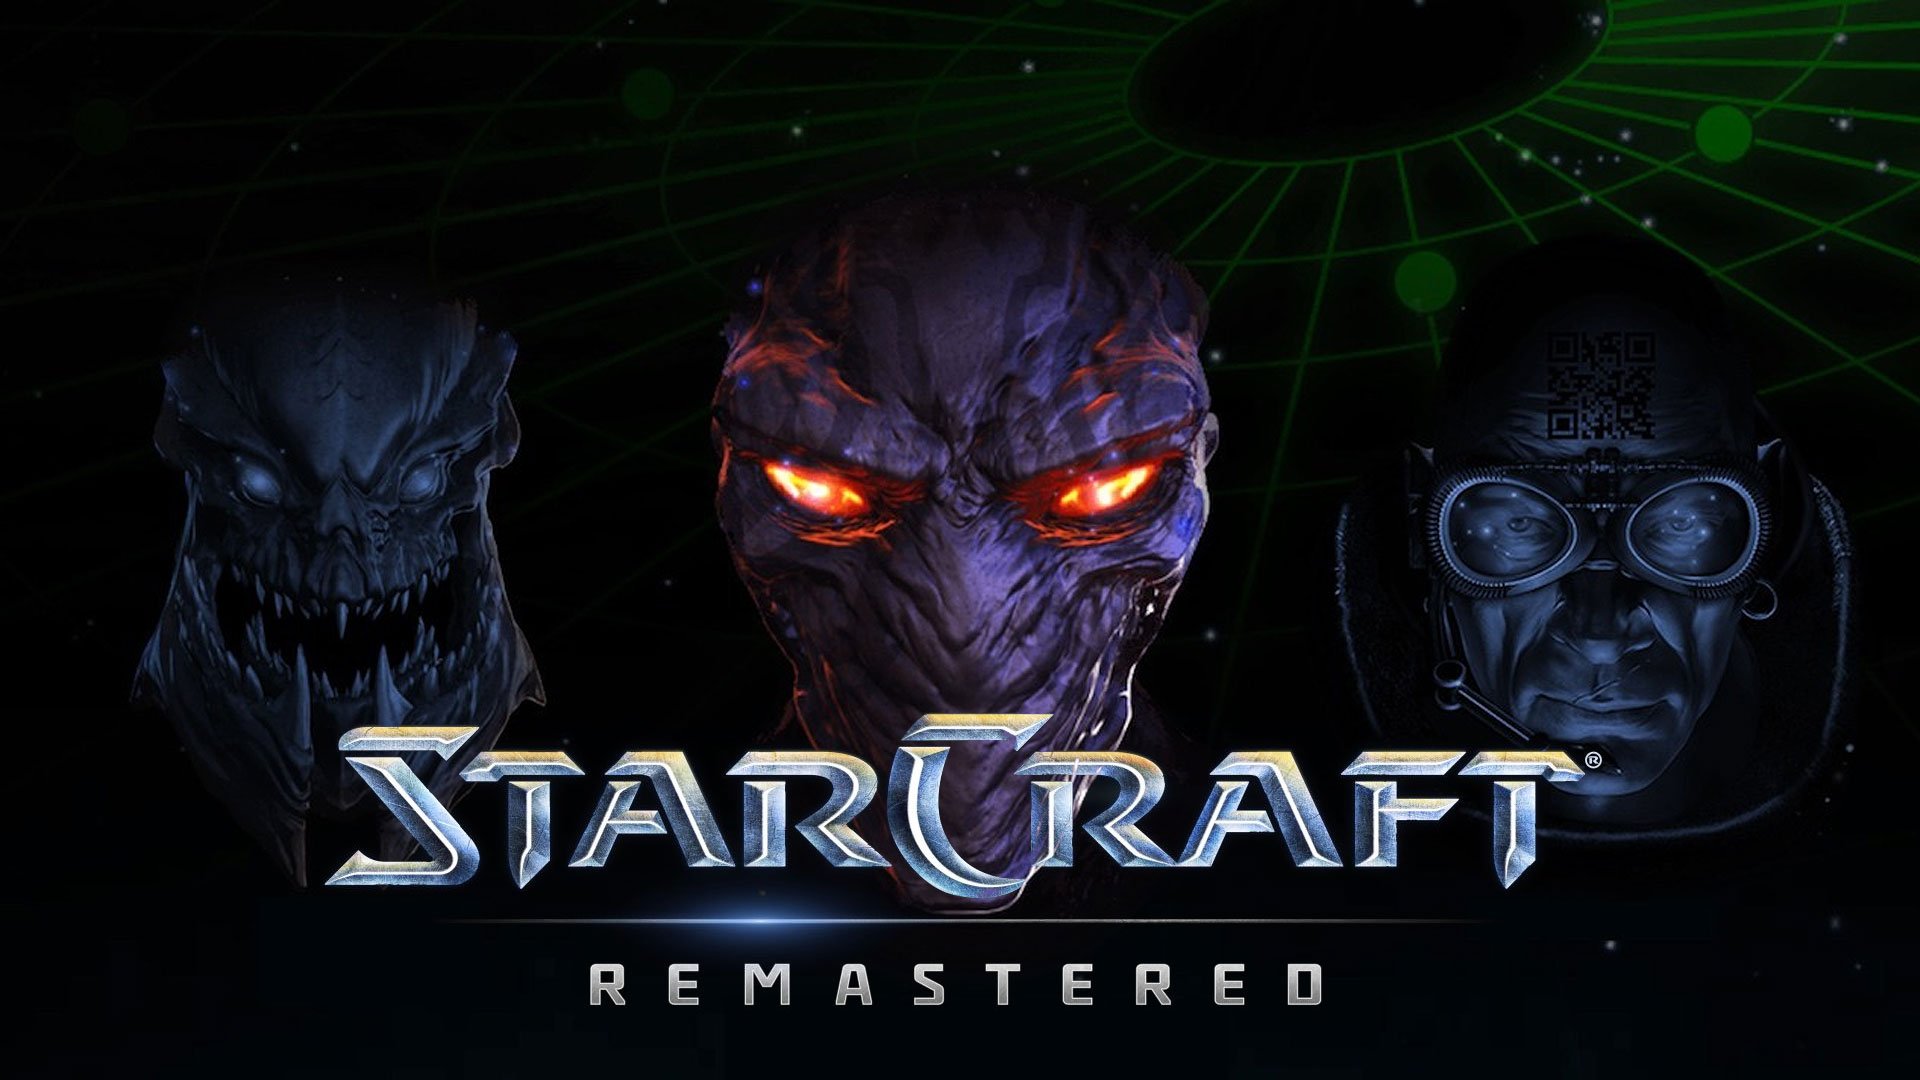 starcraft remastered bonus skin still available